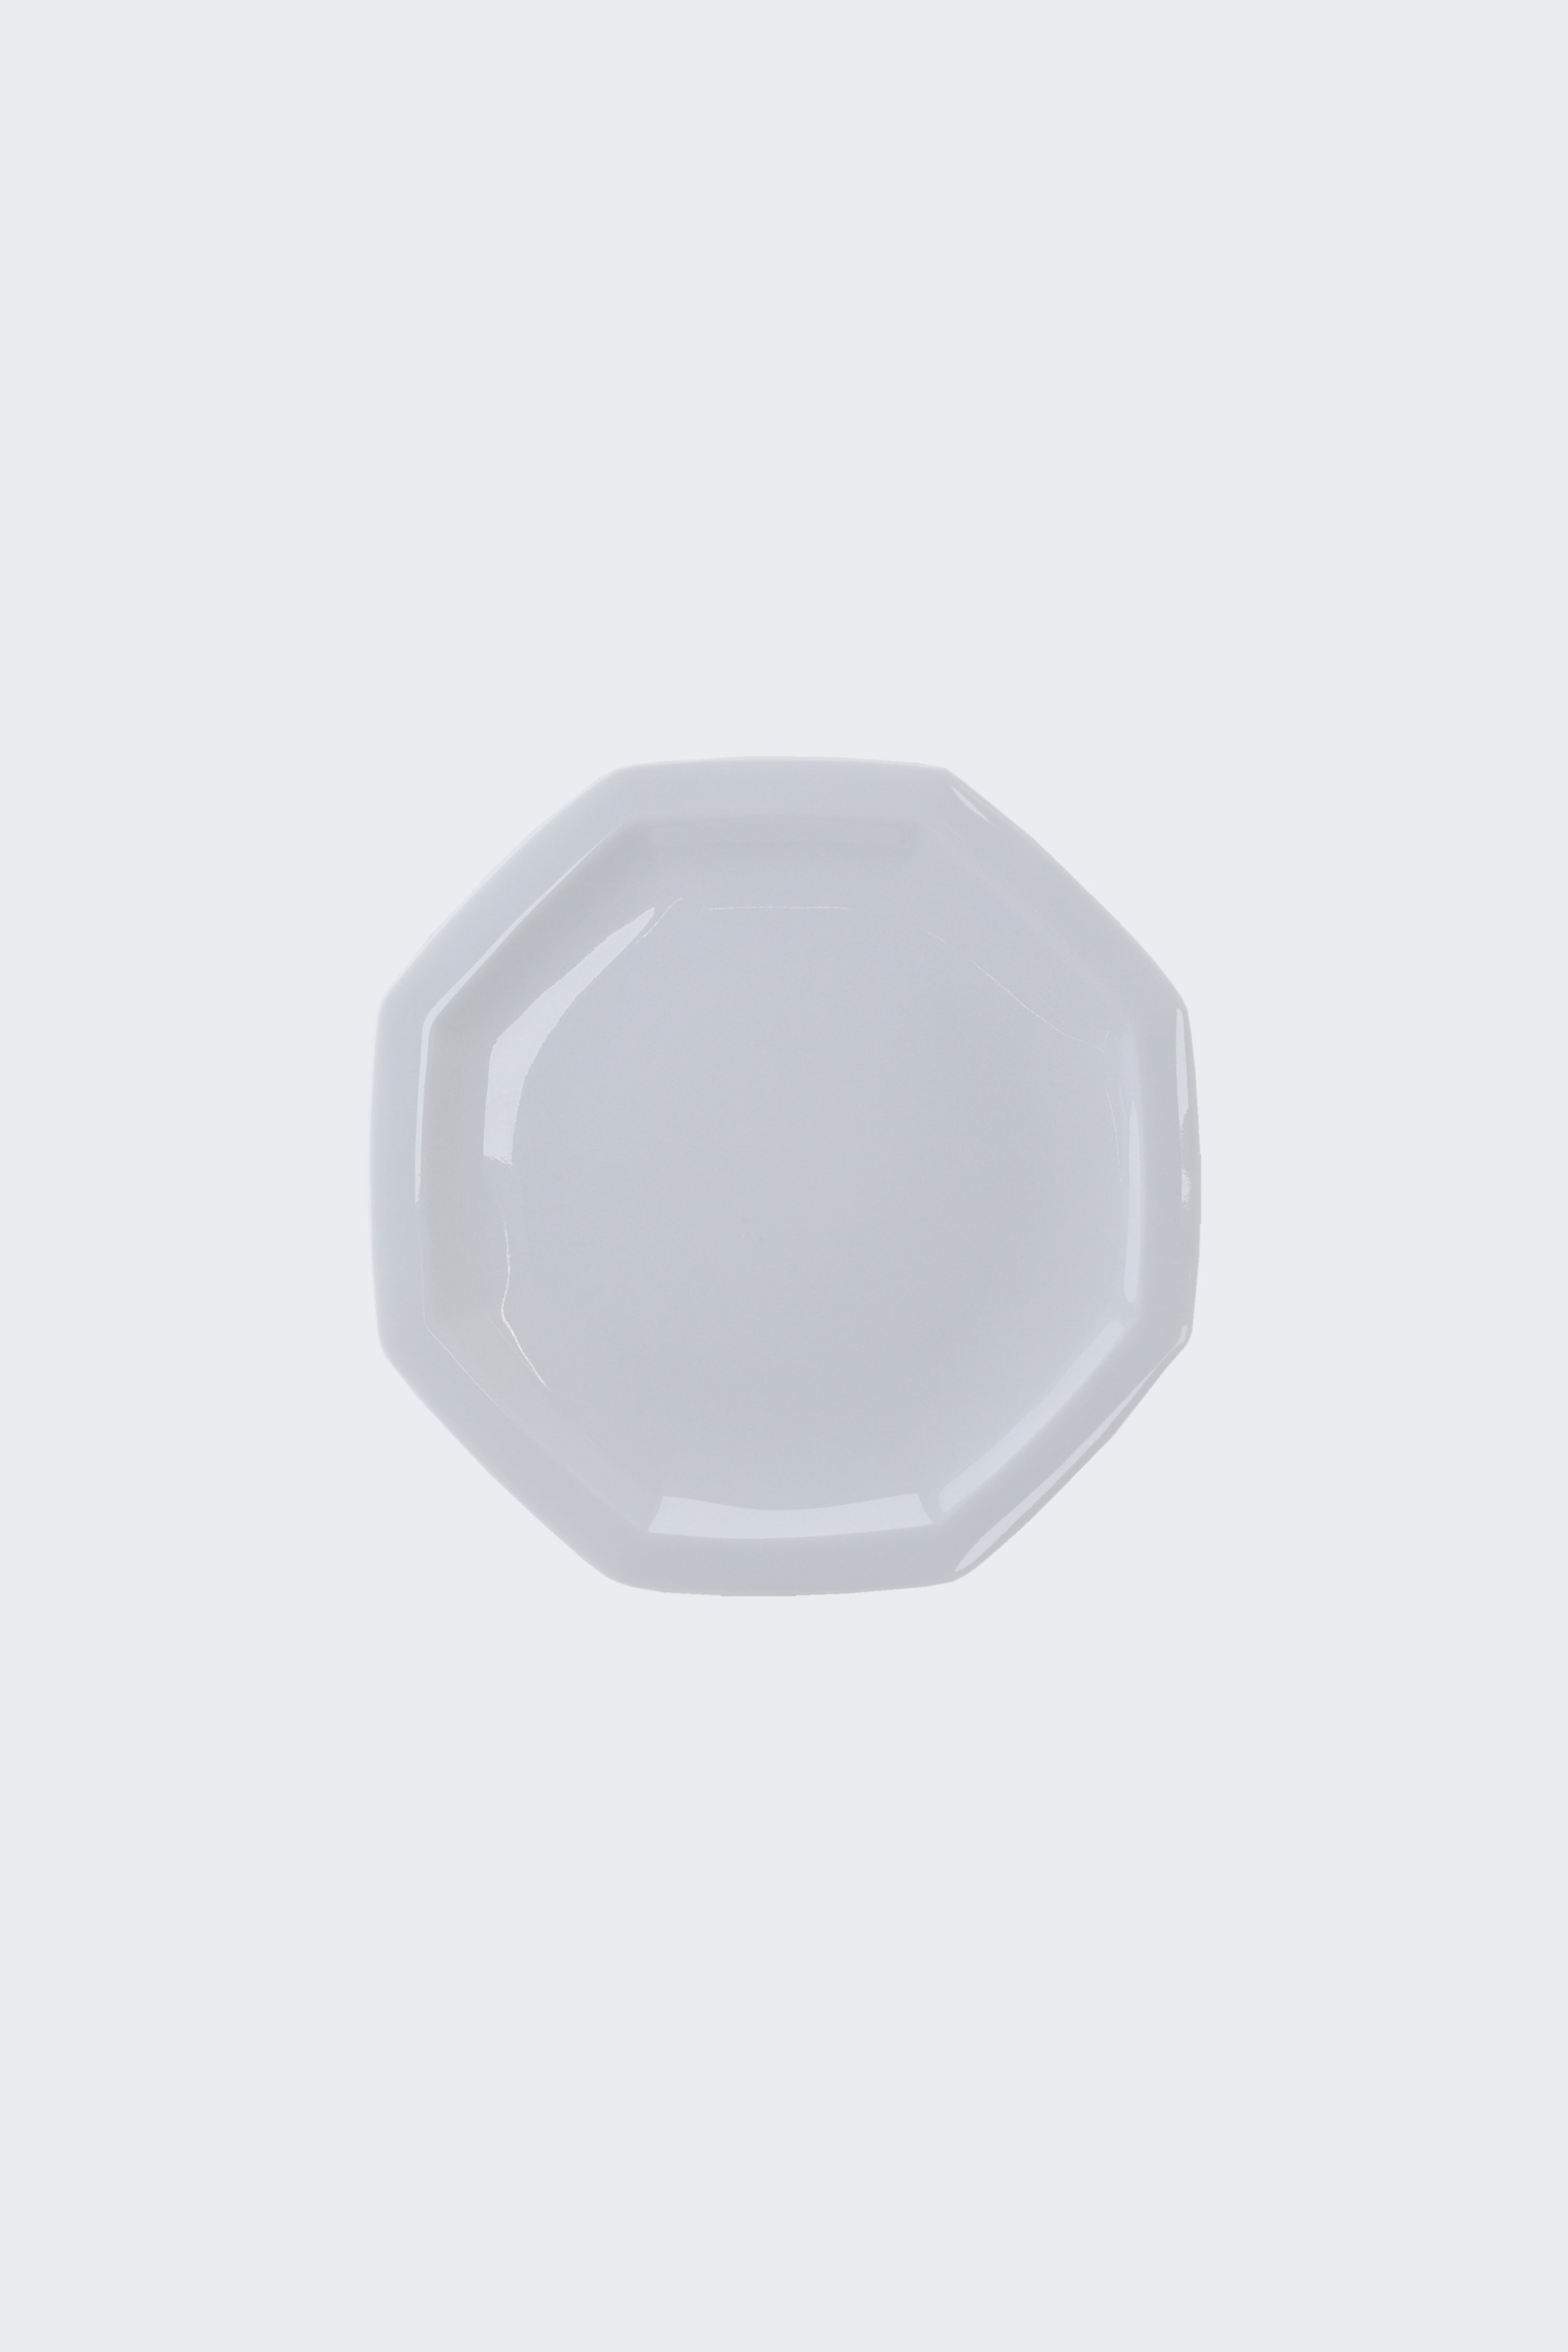 Octangle lunch plate white-Ogre-[interior]-[design]-KIOSK48TH